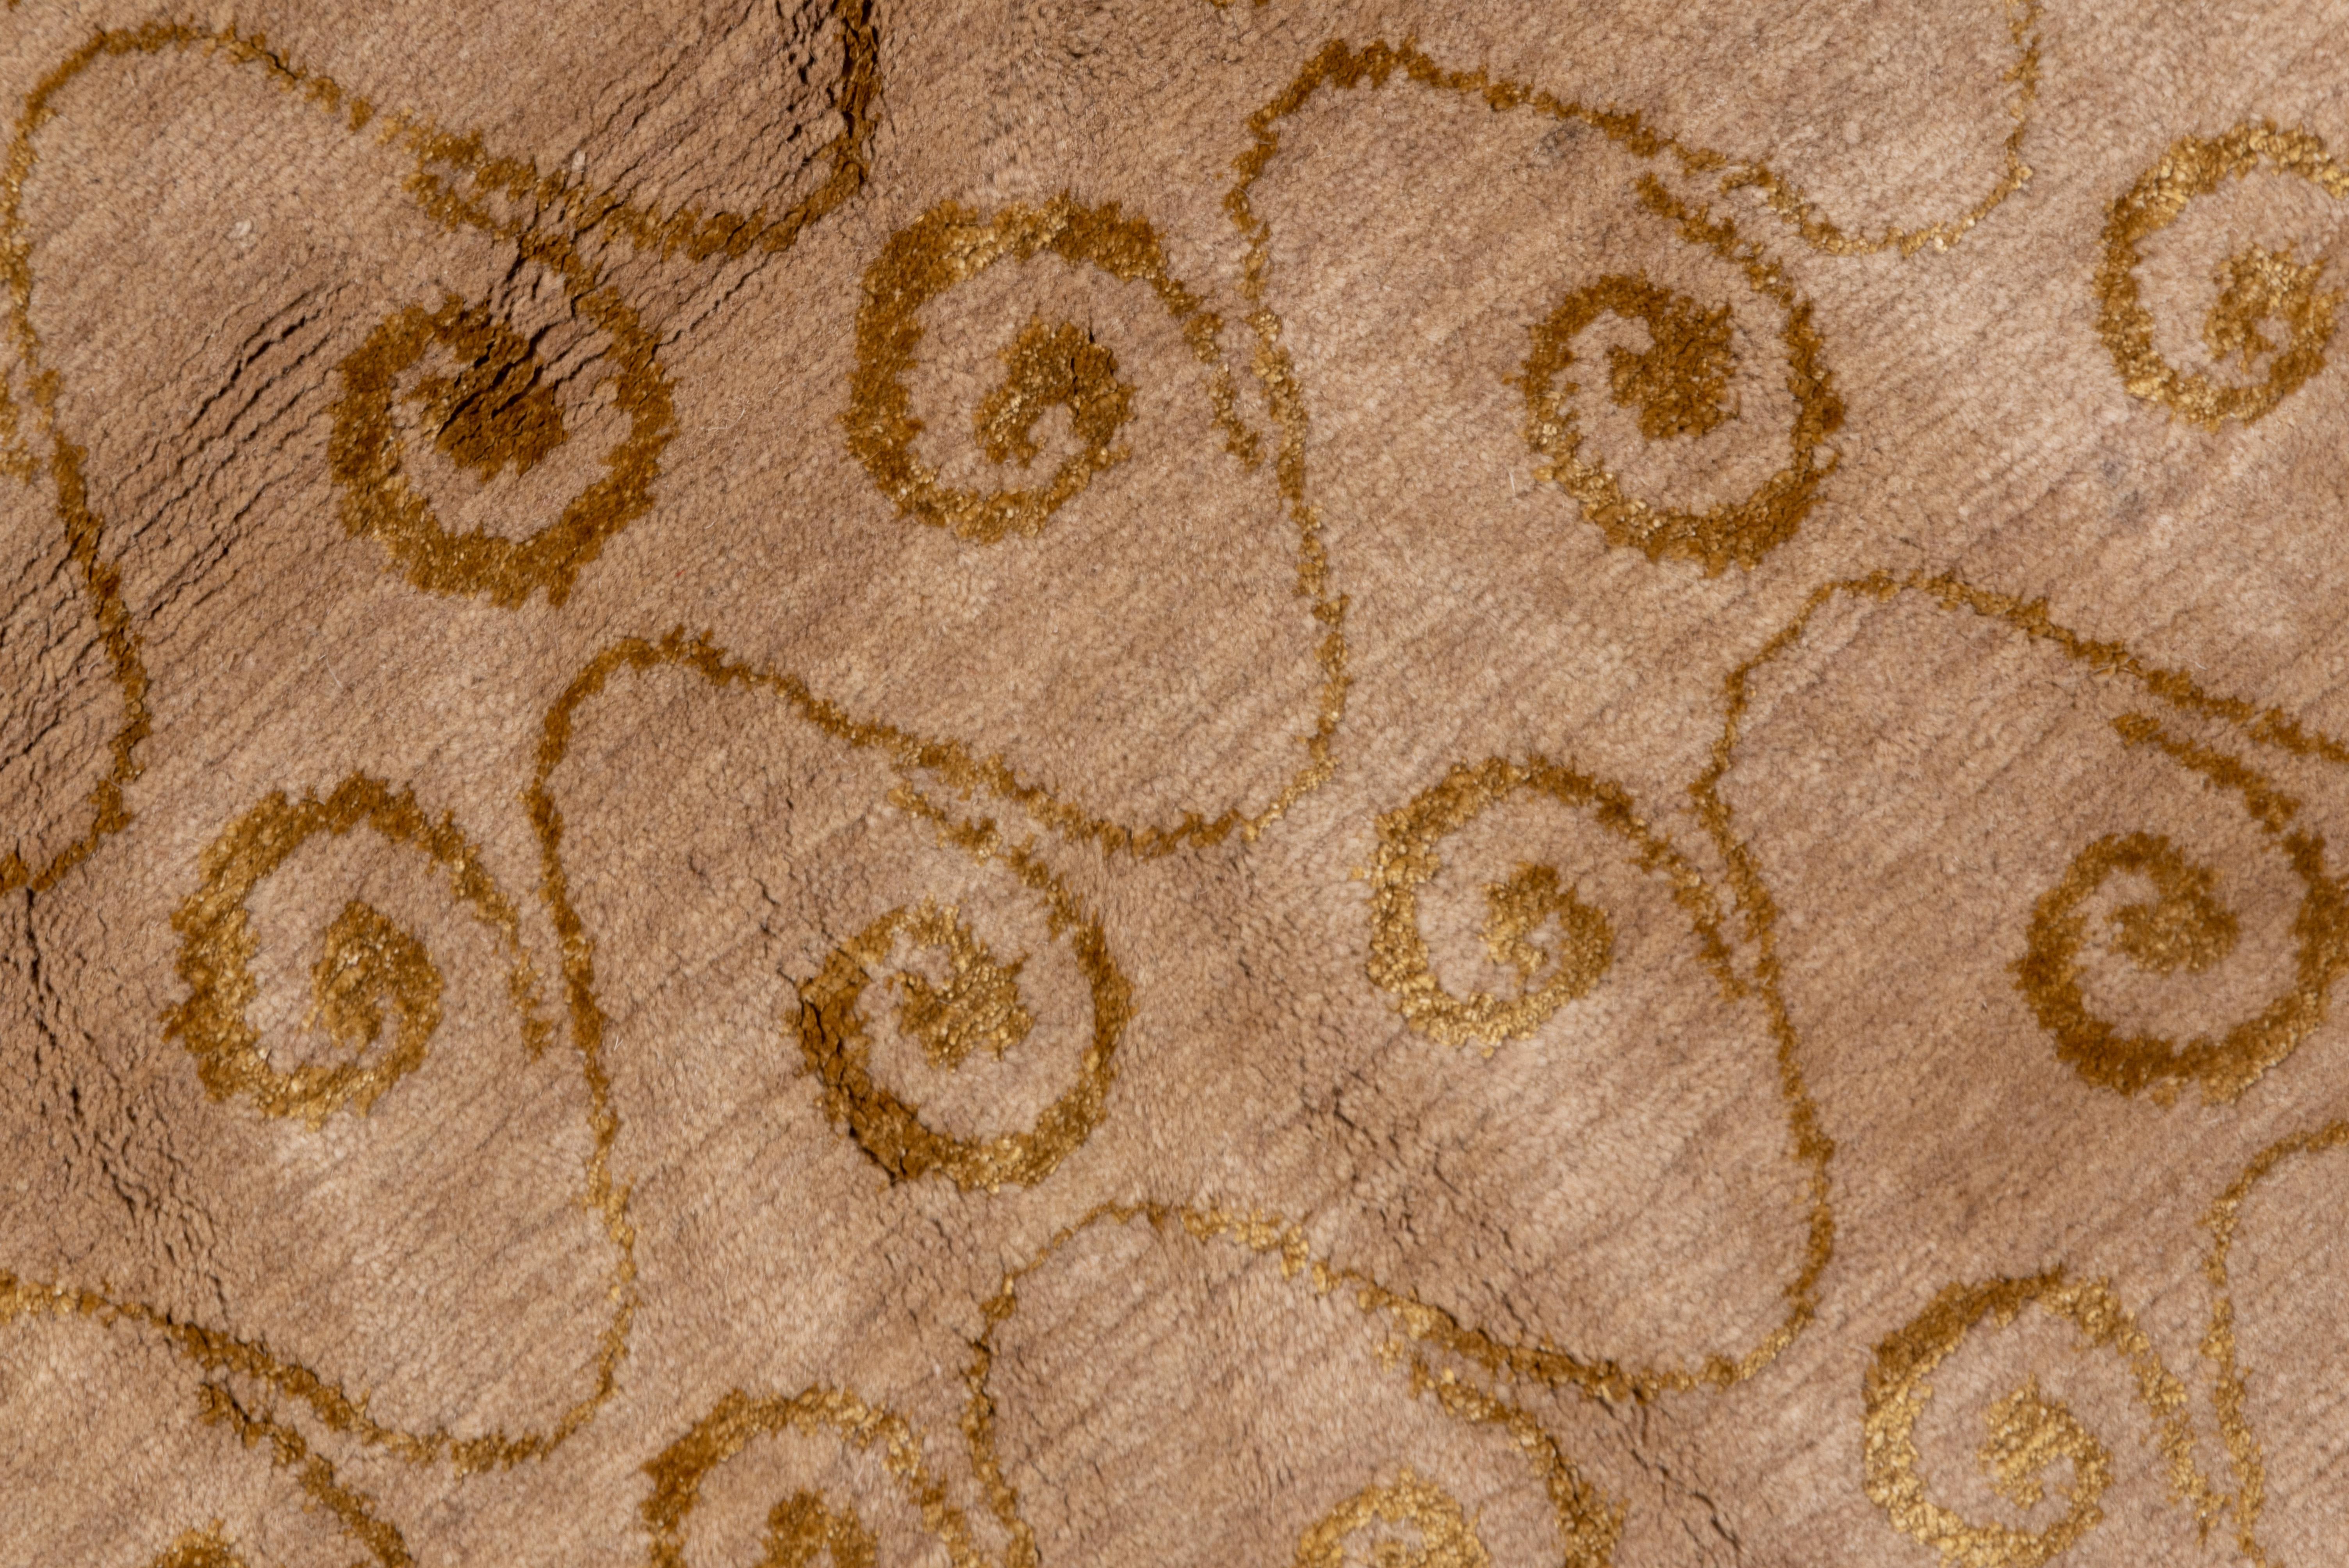 Wool Modern Tibetan Carpet with Gold Border, Gold Snail Shell Spiral Allover Field